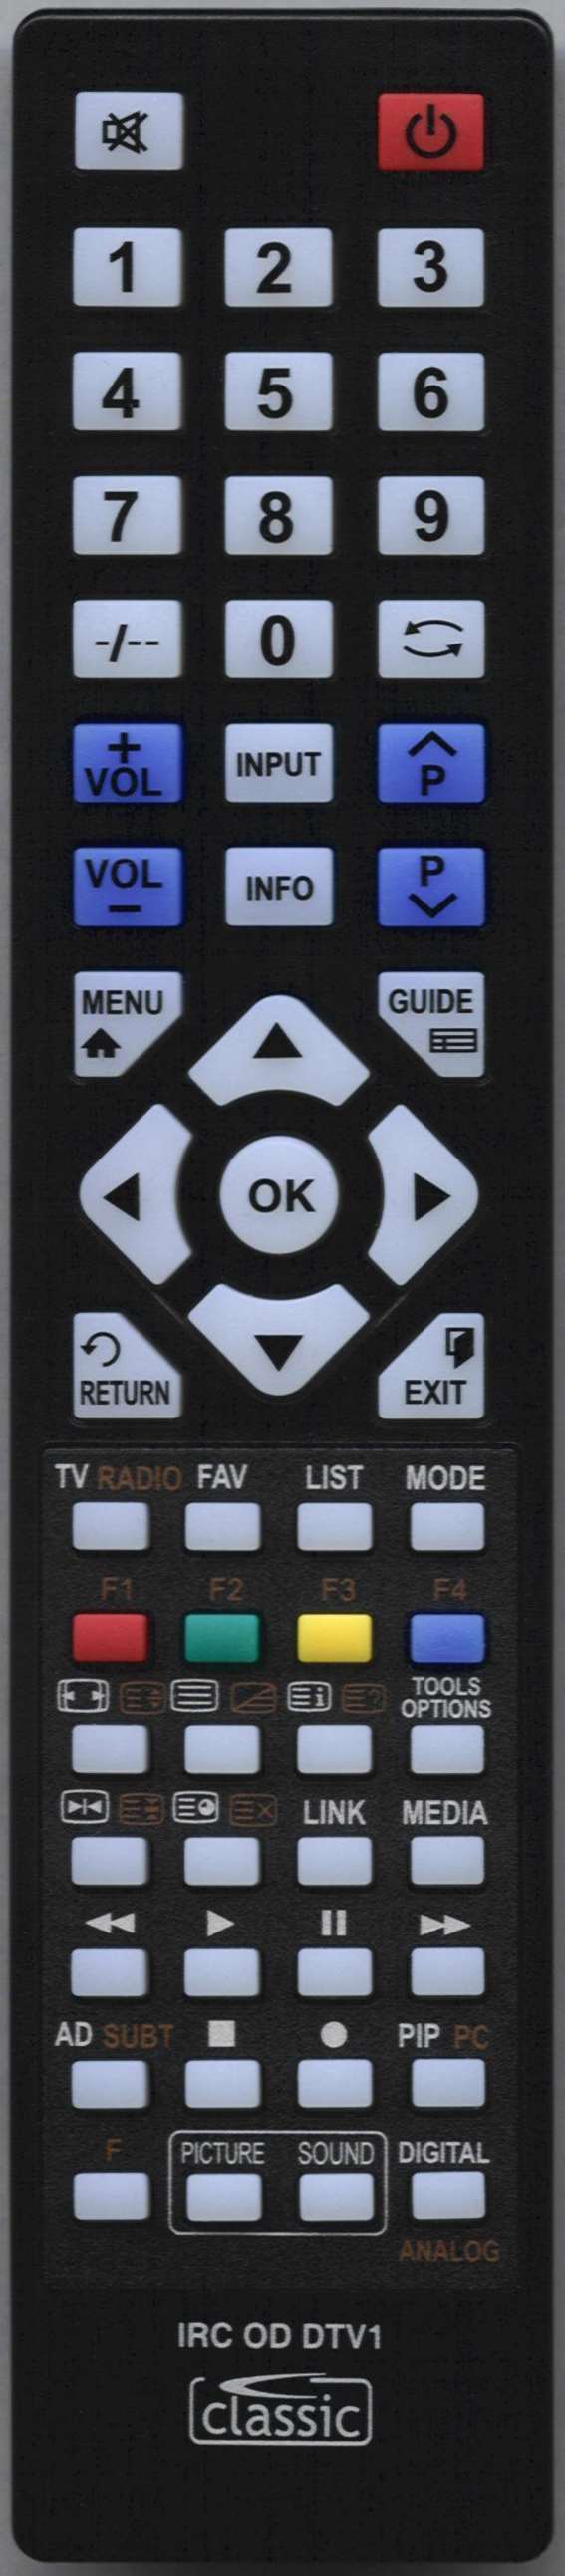 AOC N27W551T Remote Control